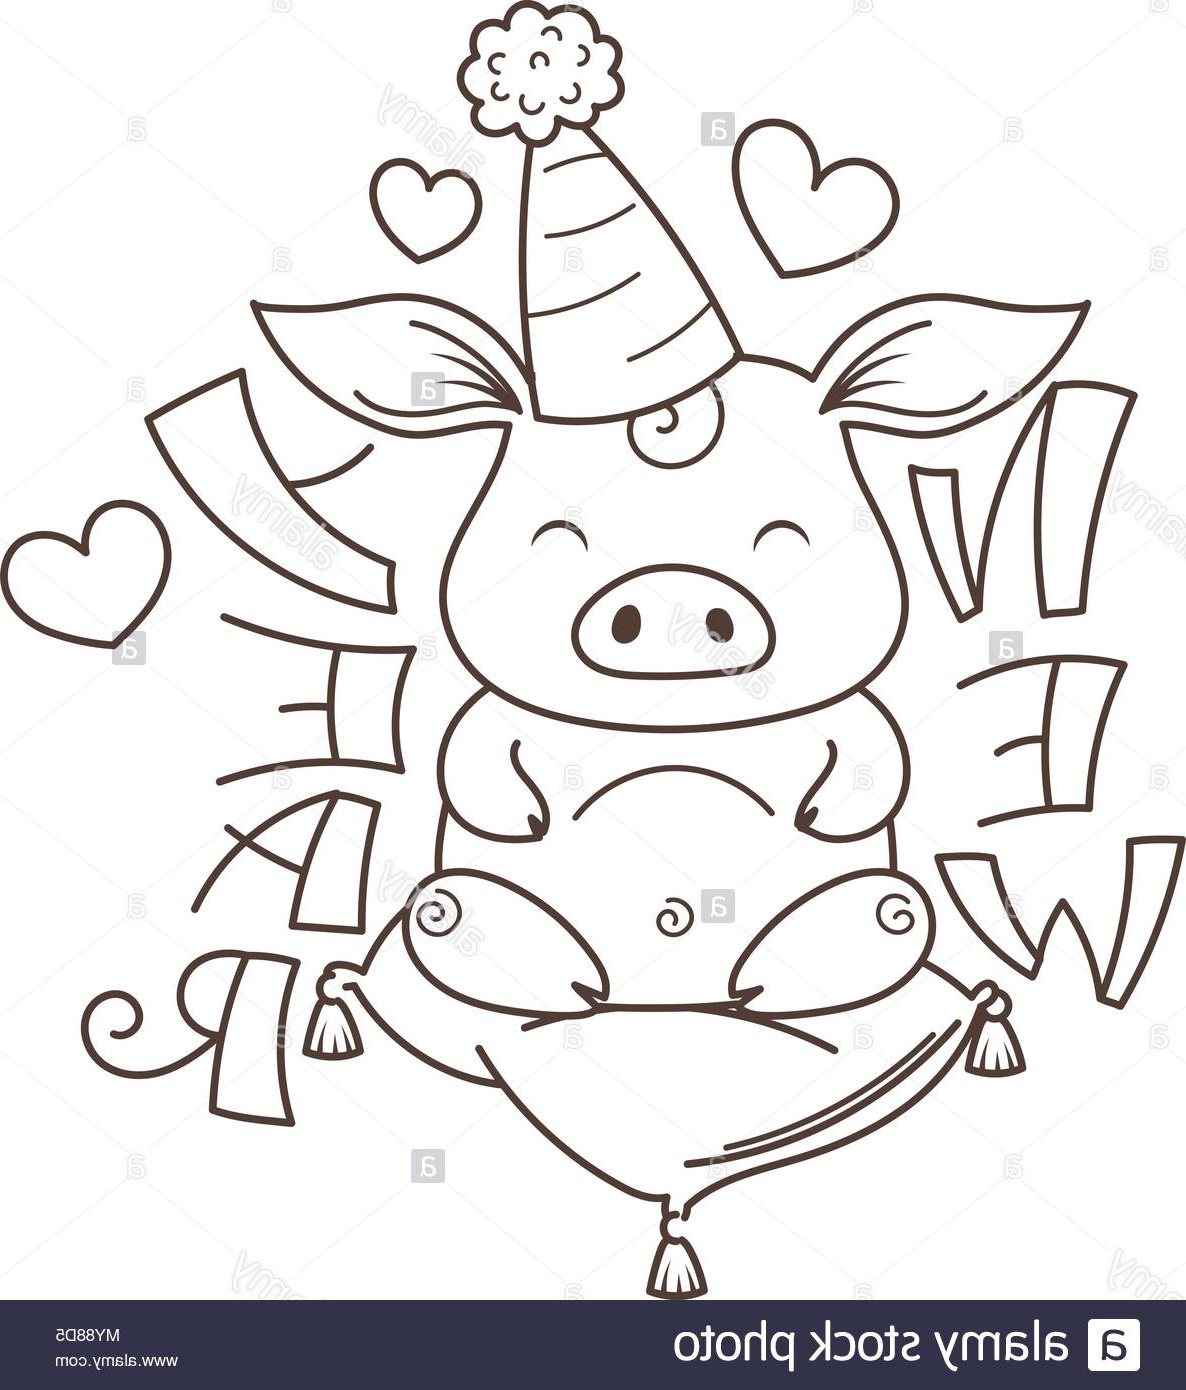 cute cartoon cochon dans lamour symbole de la nouvelle annee 2019 horoscope chinois coloriage image